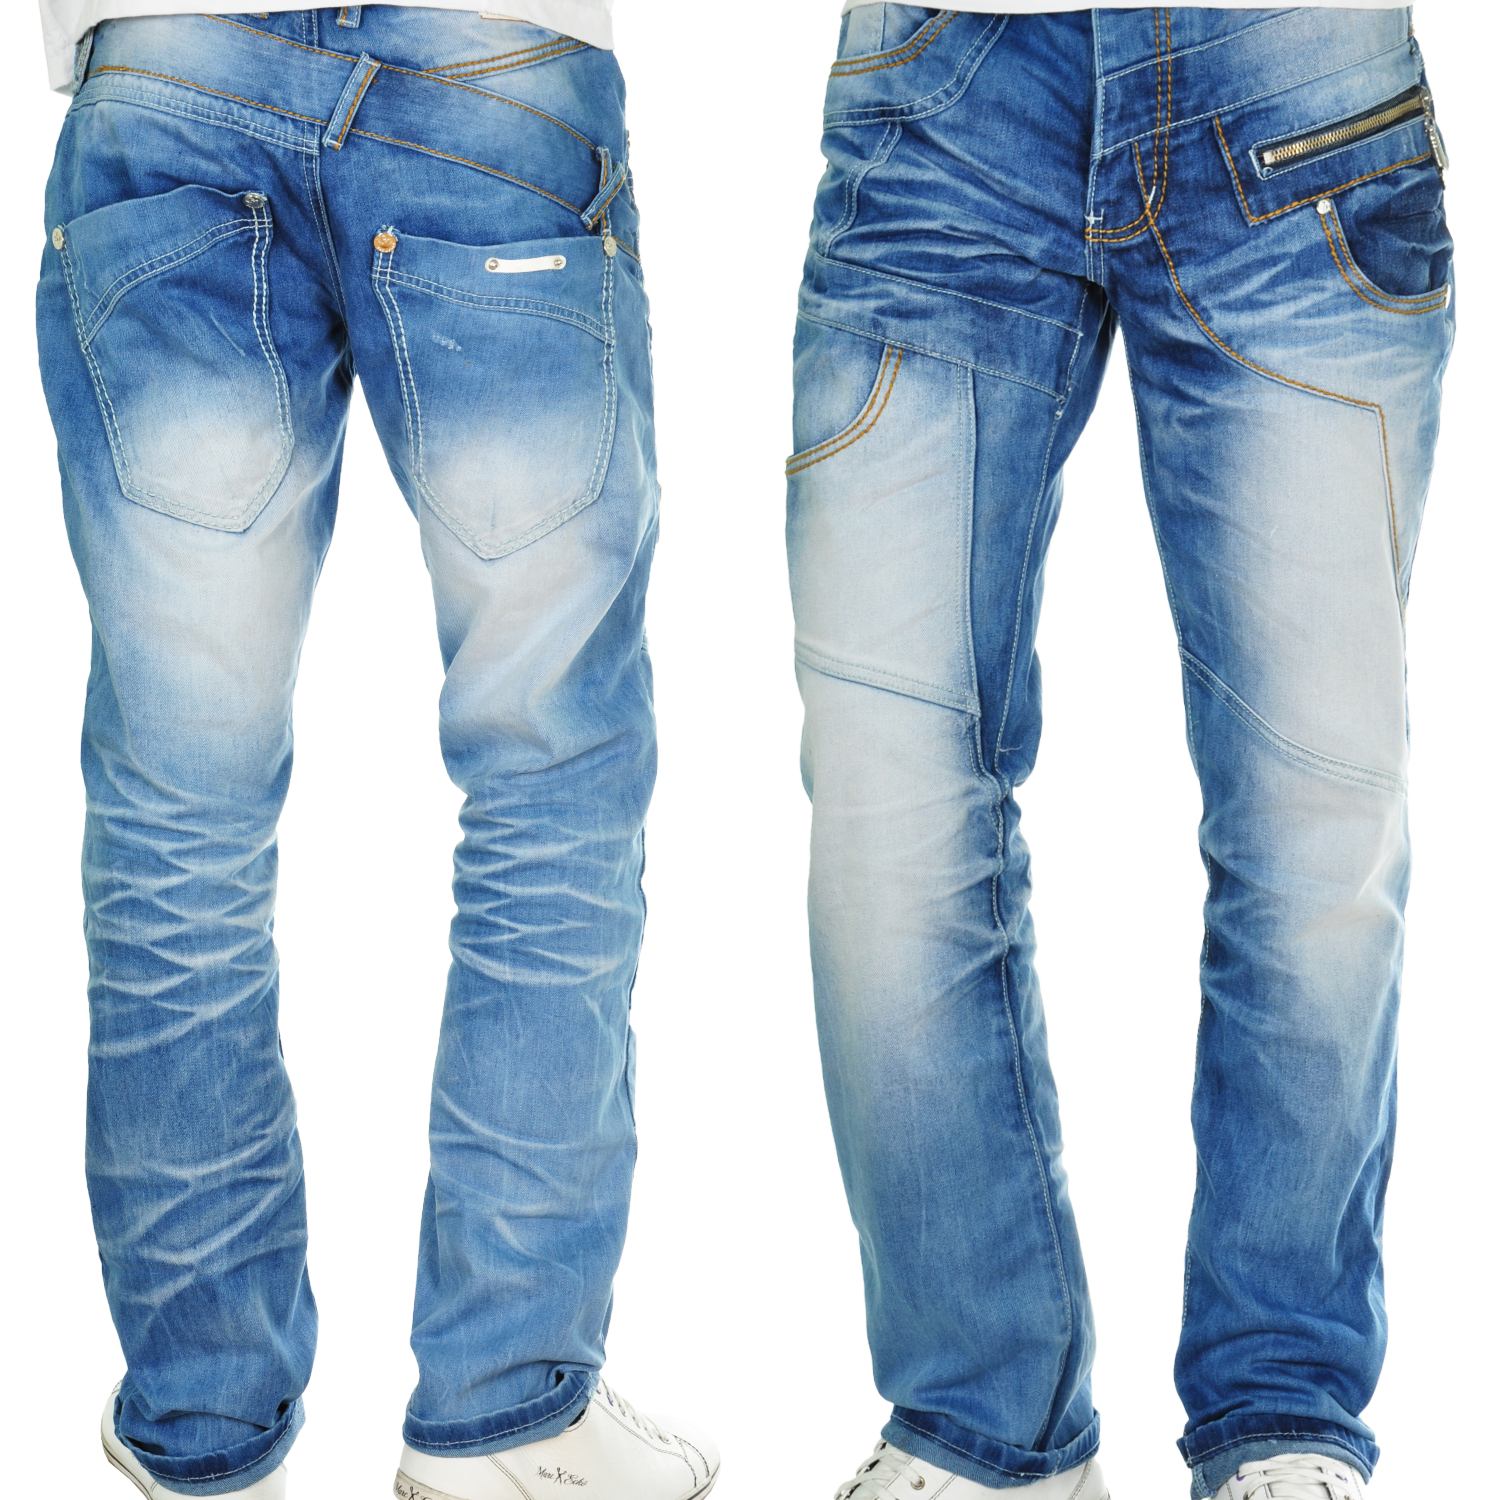 Foto Milano Style Jeansnet Regular Fit Jeans Azul foto 92318